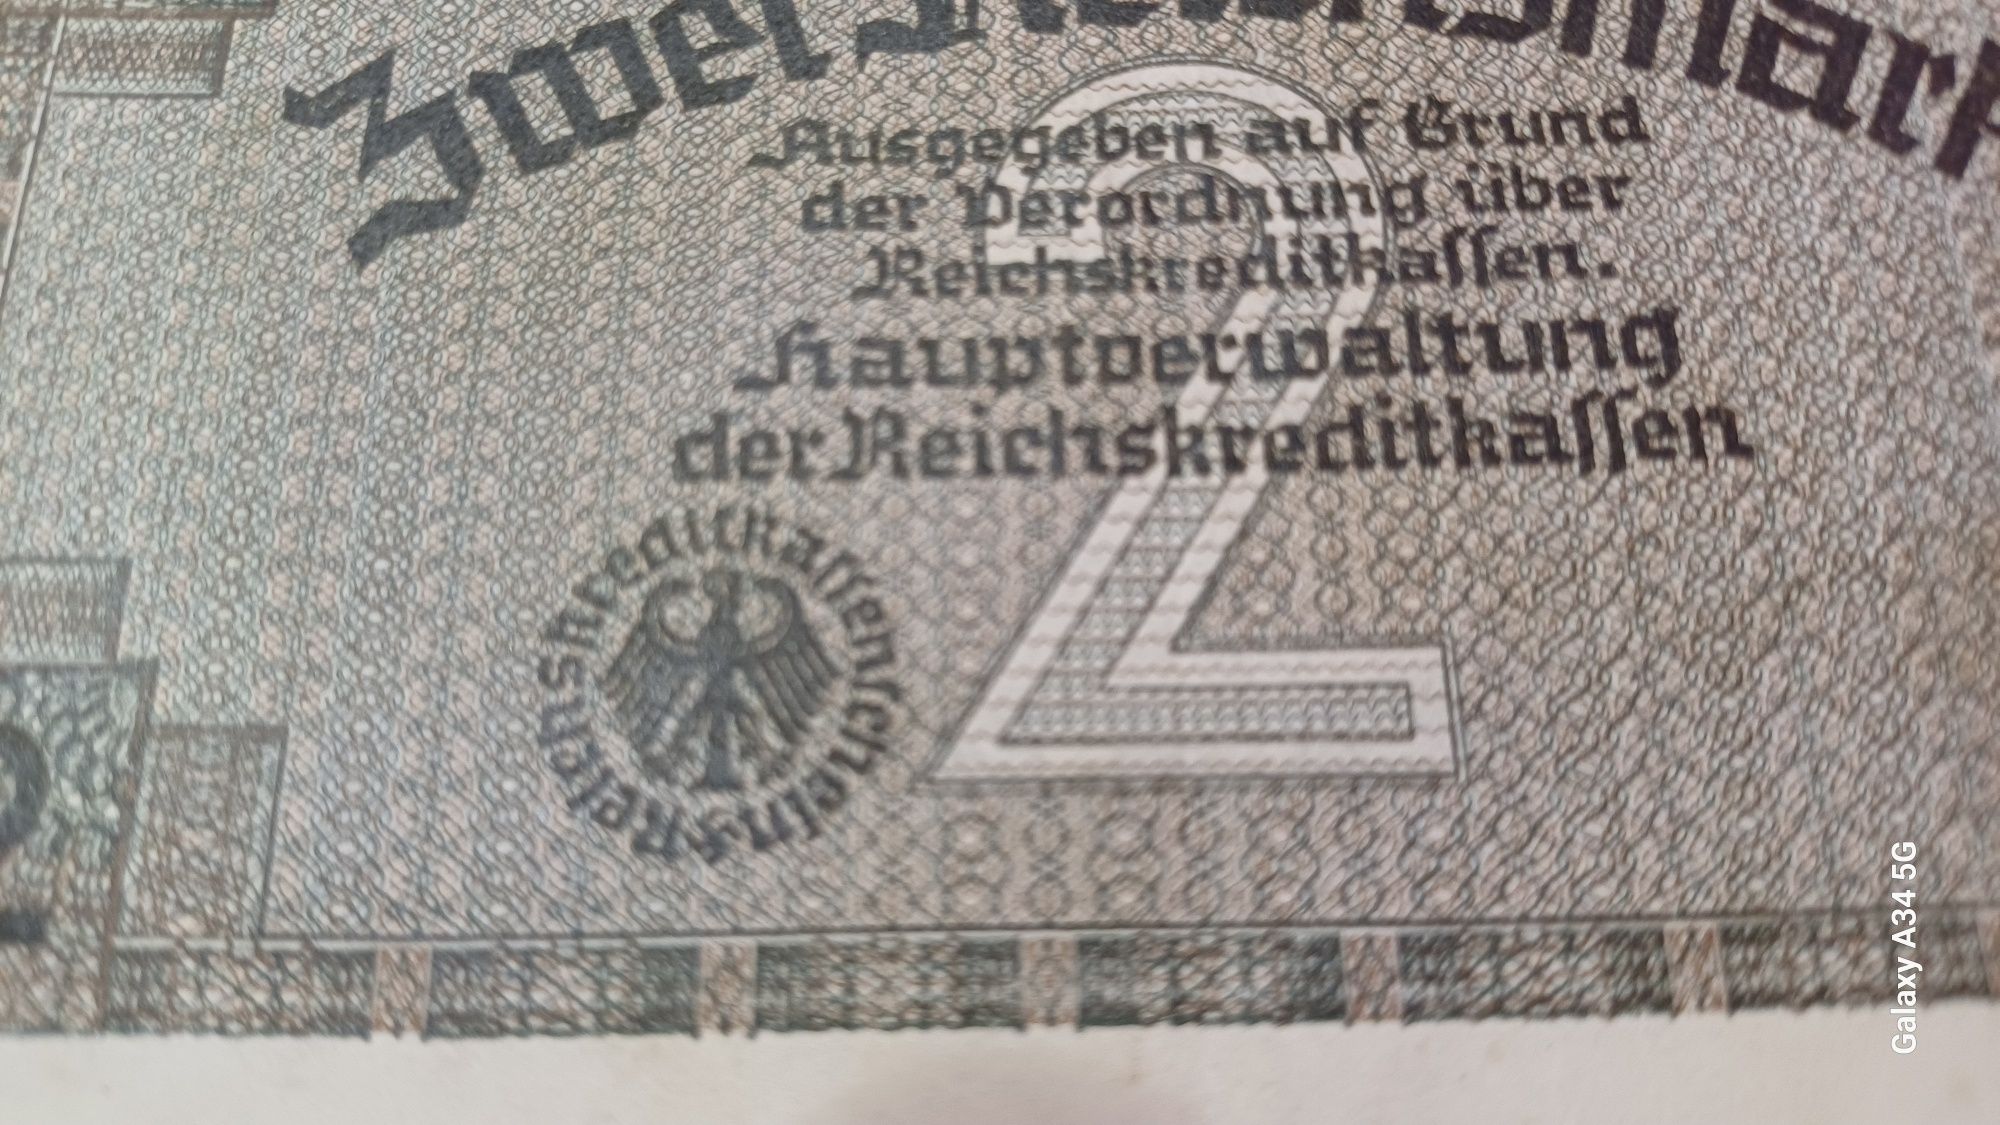 PROMOÇÃO--2 reichsmark REICHSKREDITKASSEN ORIGINAL Alemanha nazi-suást